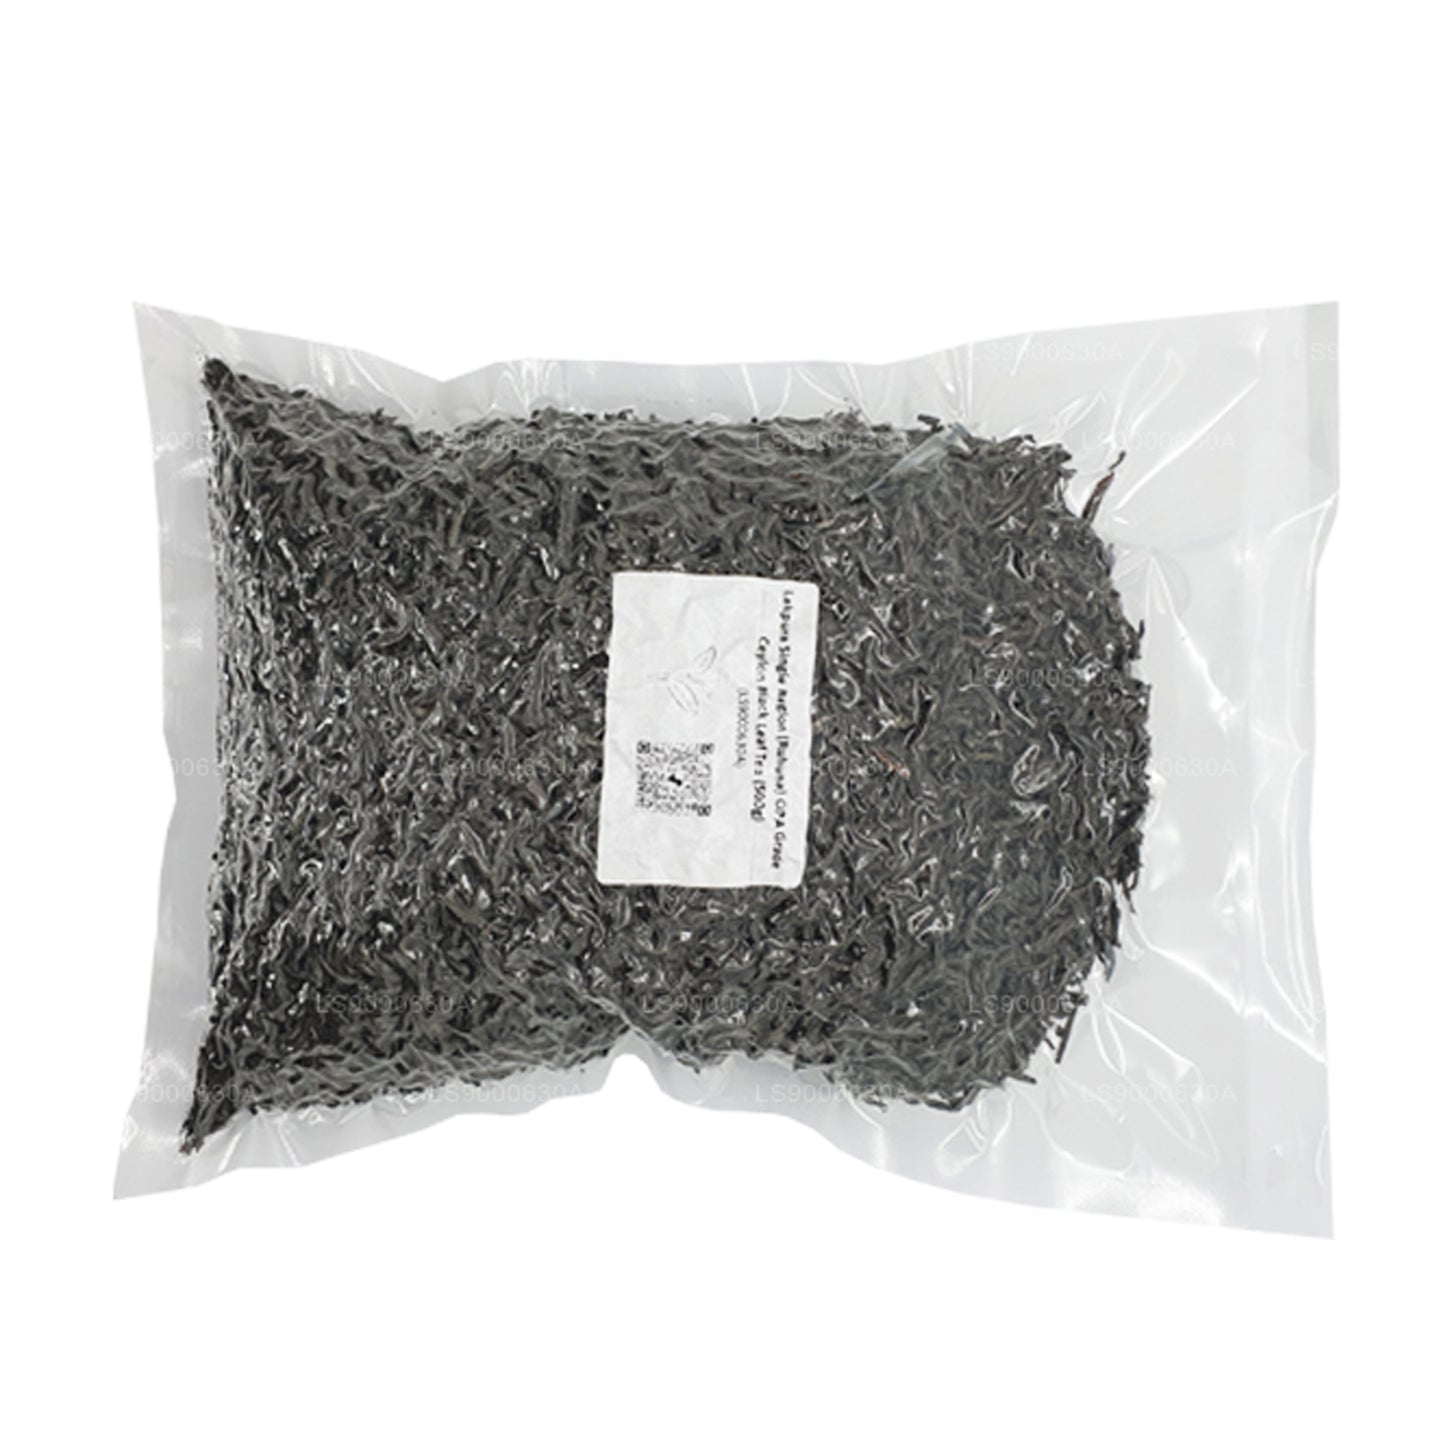 Lakpura Single Region (Ruhuna) OPA Grade Ceylon Black Leaf Tea (500g) Pack